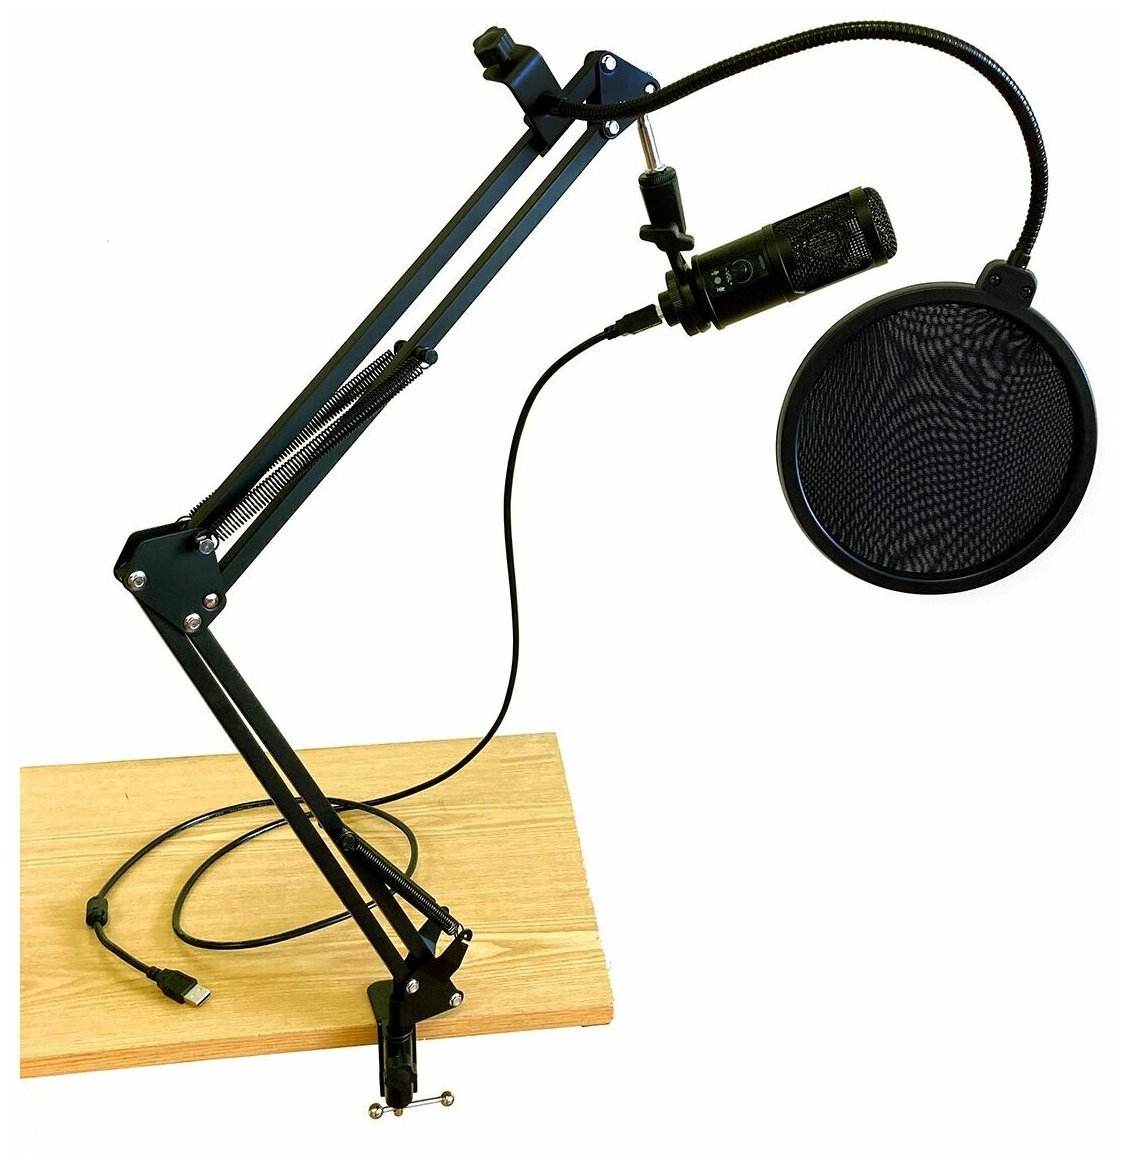 Микрофонный комплект Espada, модель EU010-ST